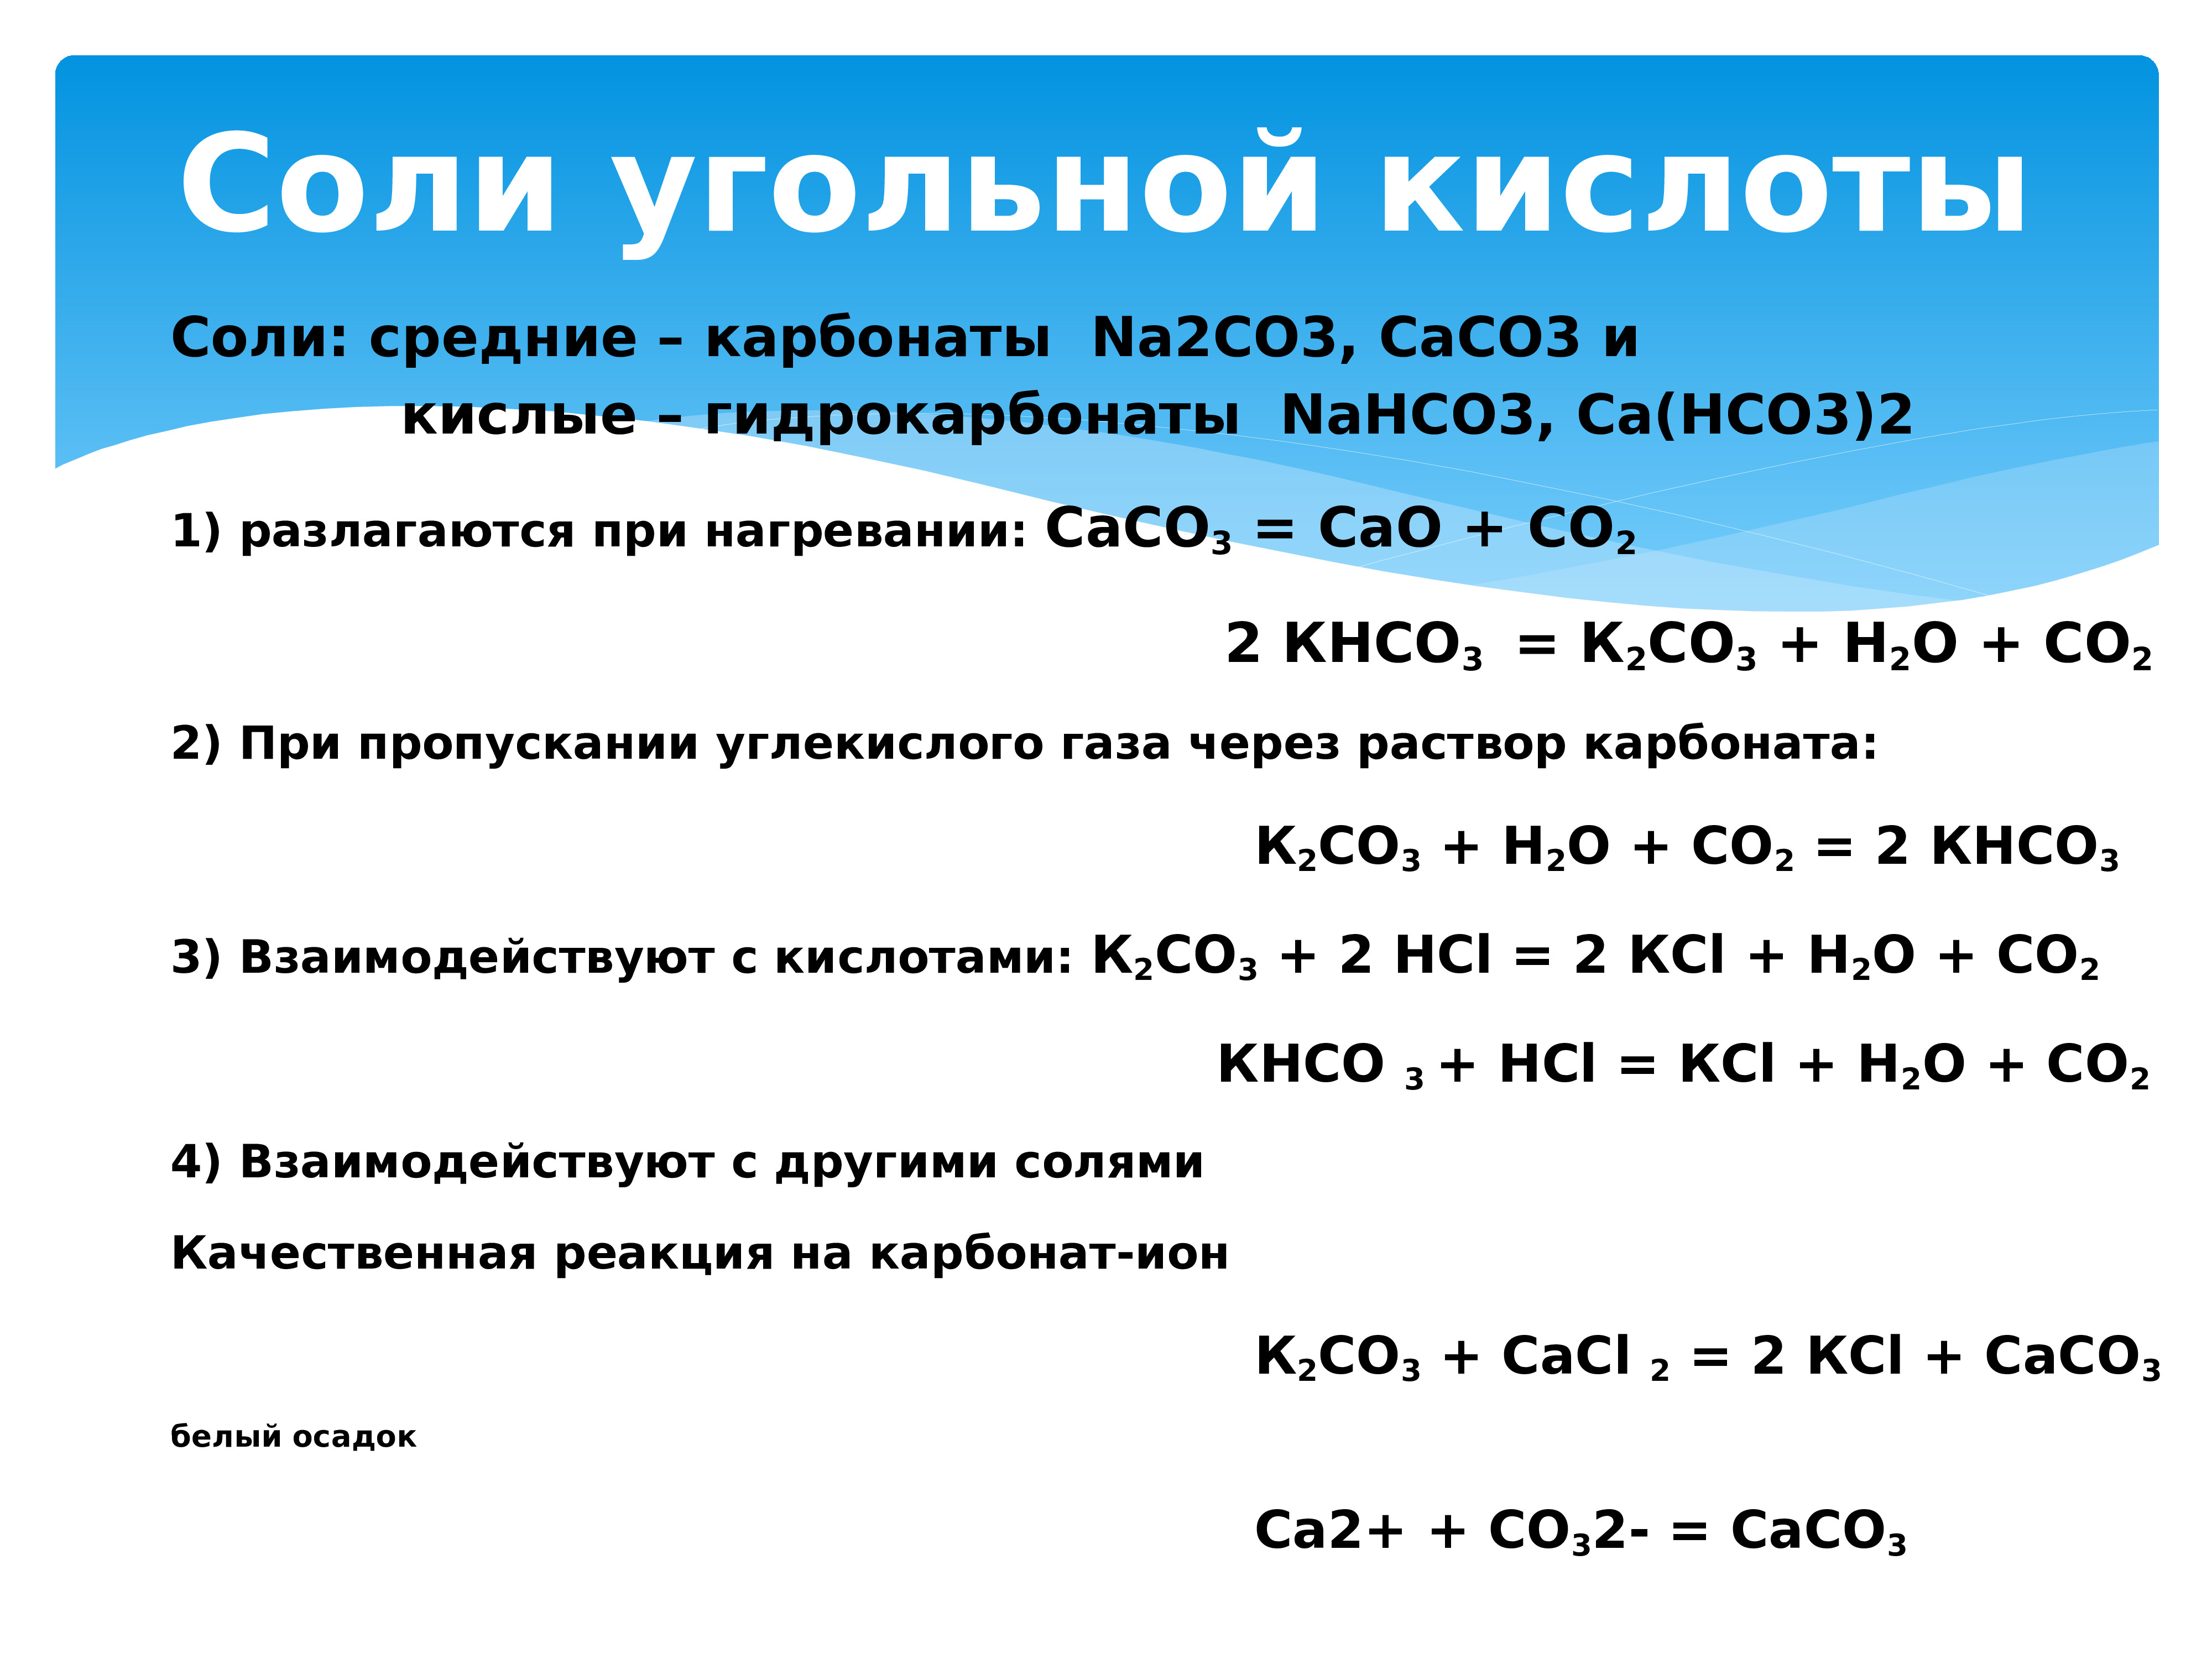 Оксид калия реагирует с углекислым газом. Соли угольной кислоты карбонаты и гидрокарбонаты. Разложение карбонатов и гидрокарбонатов при нагревании. Реакции с углекислым газом. Соли угольной кислоты.